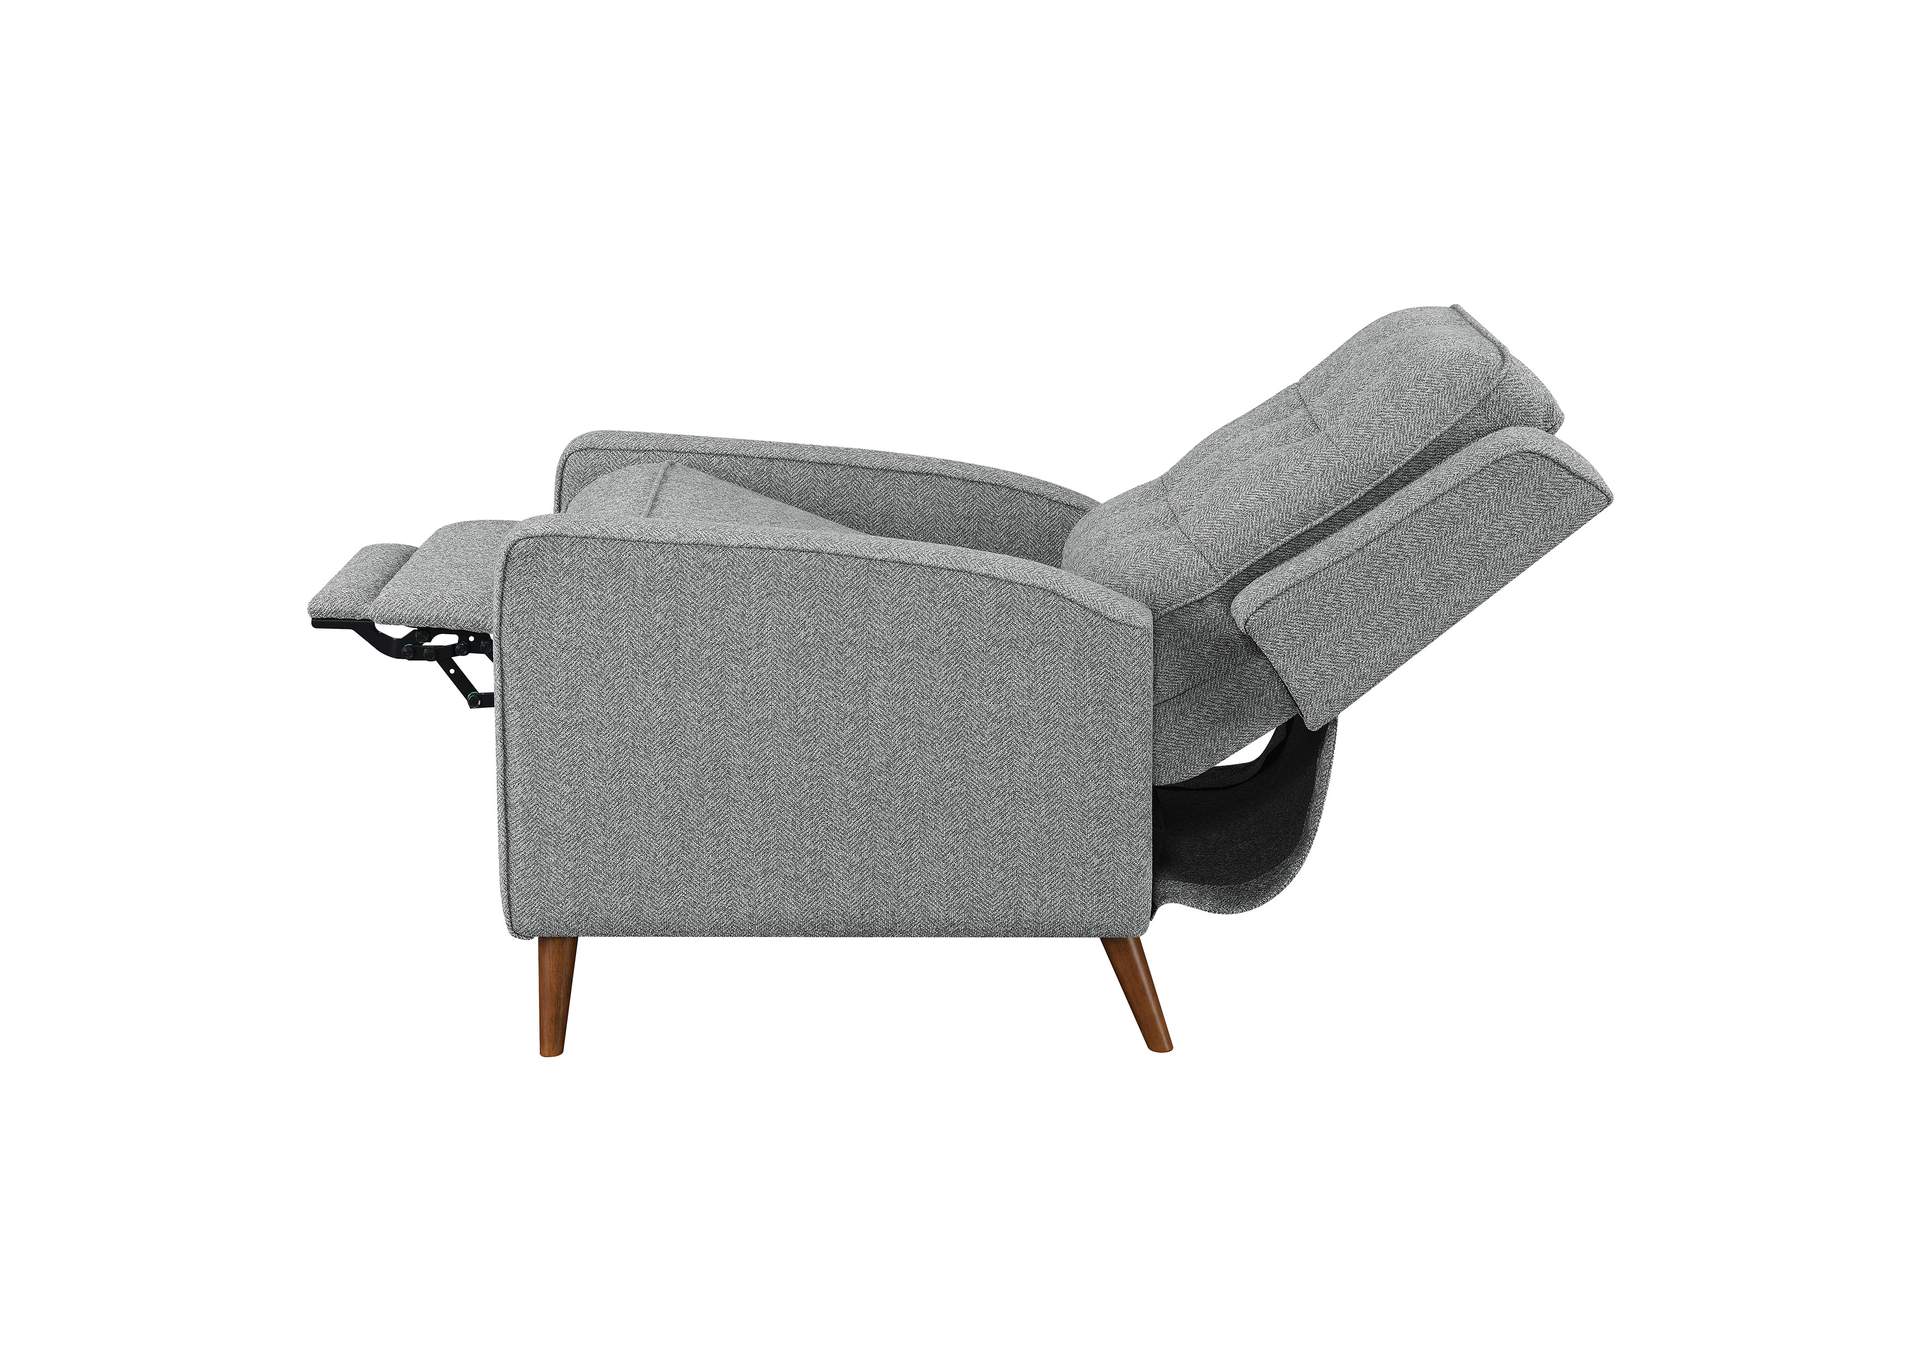 Davidson Upholstered Tufted Push Back Recliner Grey,Coaster Furniture